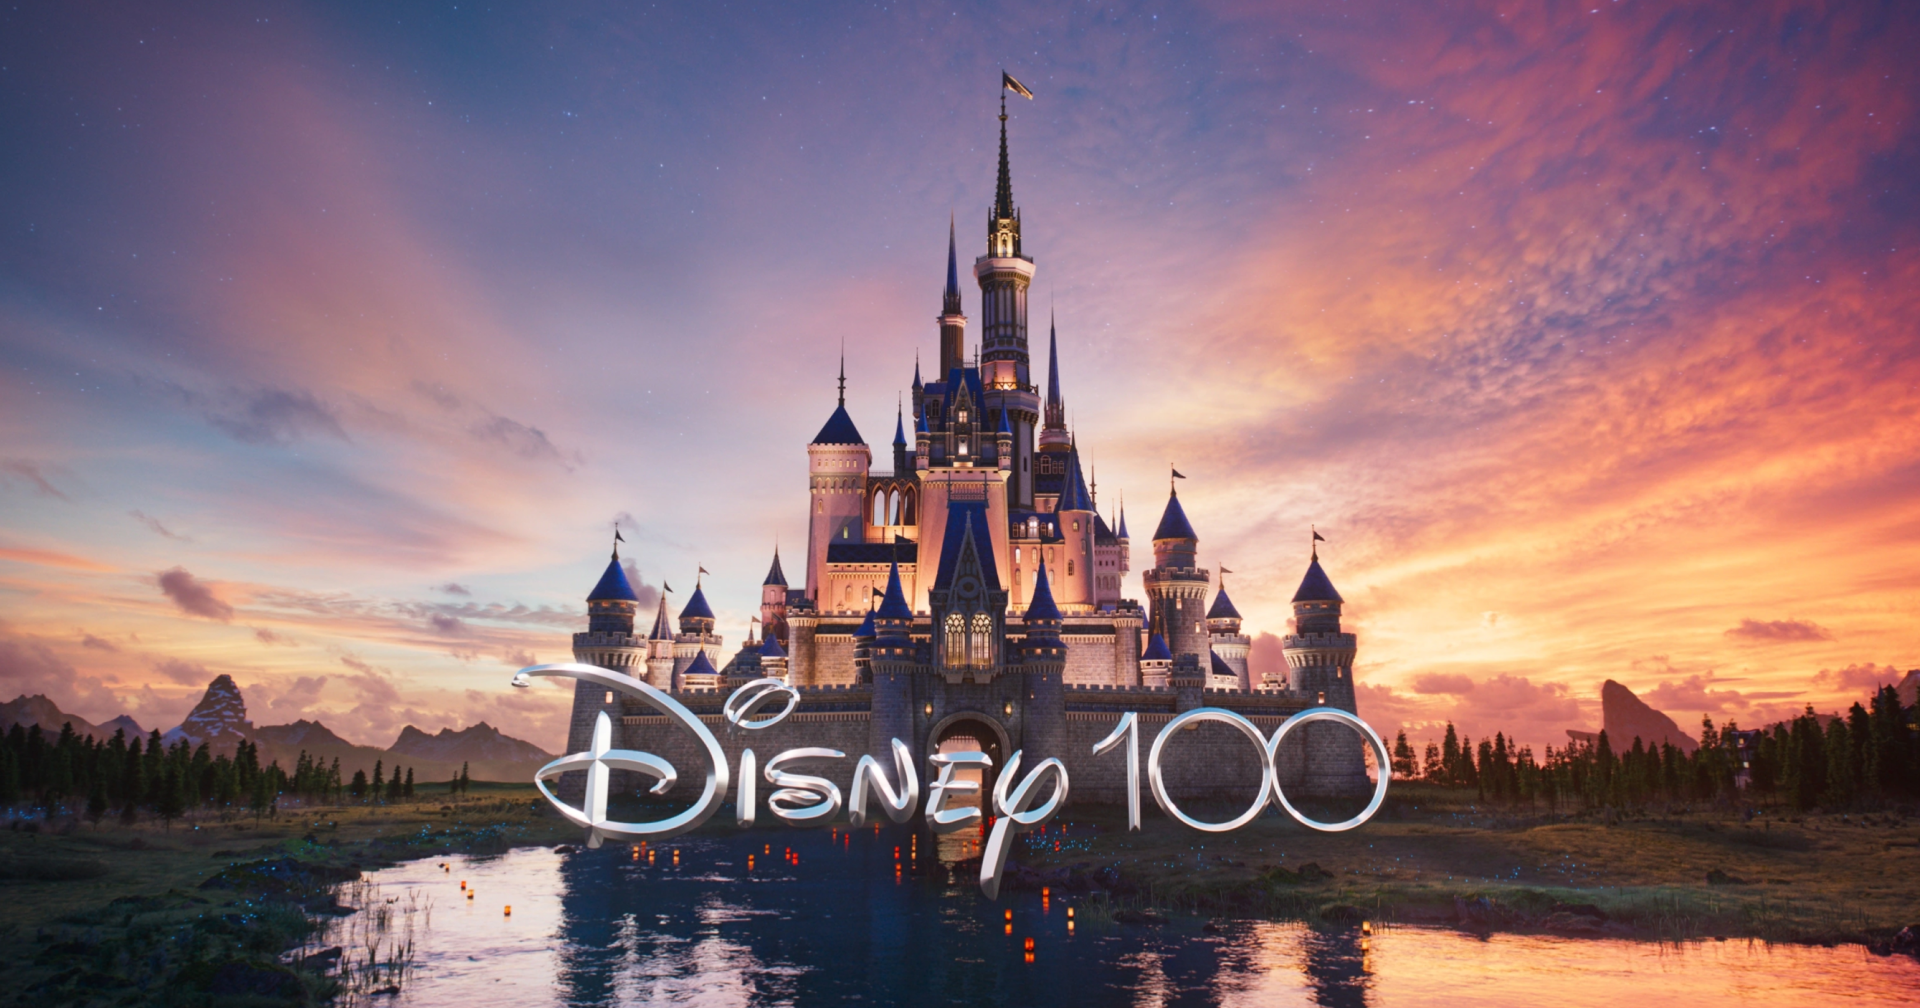 Disney ประกาศปลดพนักงานรอบแรกกระทบพนักงานมากถึง 7,000 คนทั่วโลก